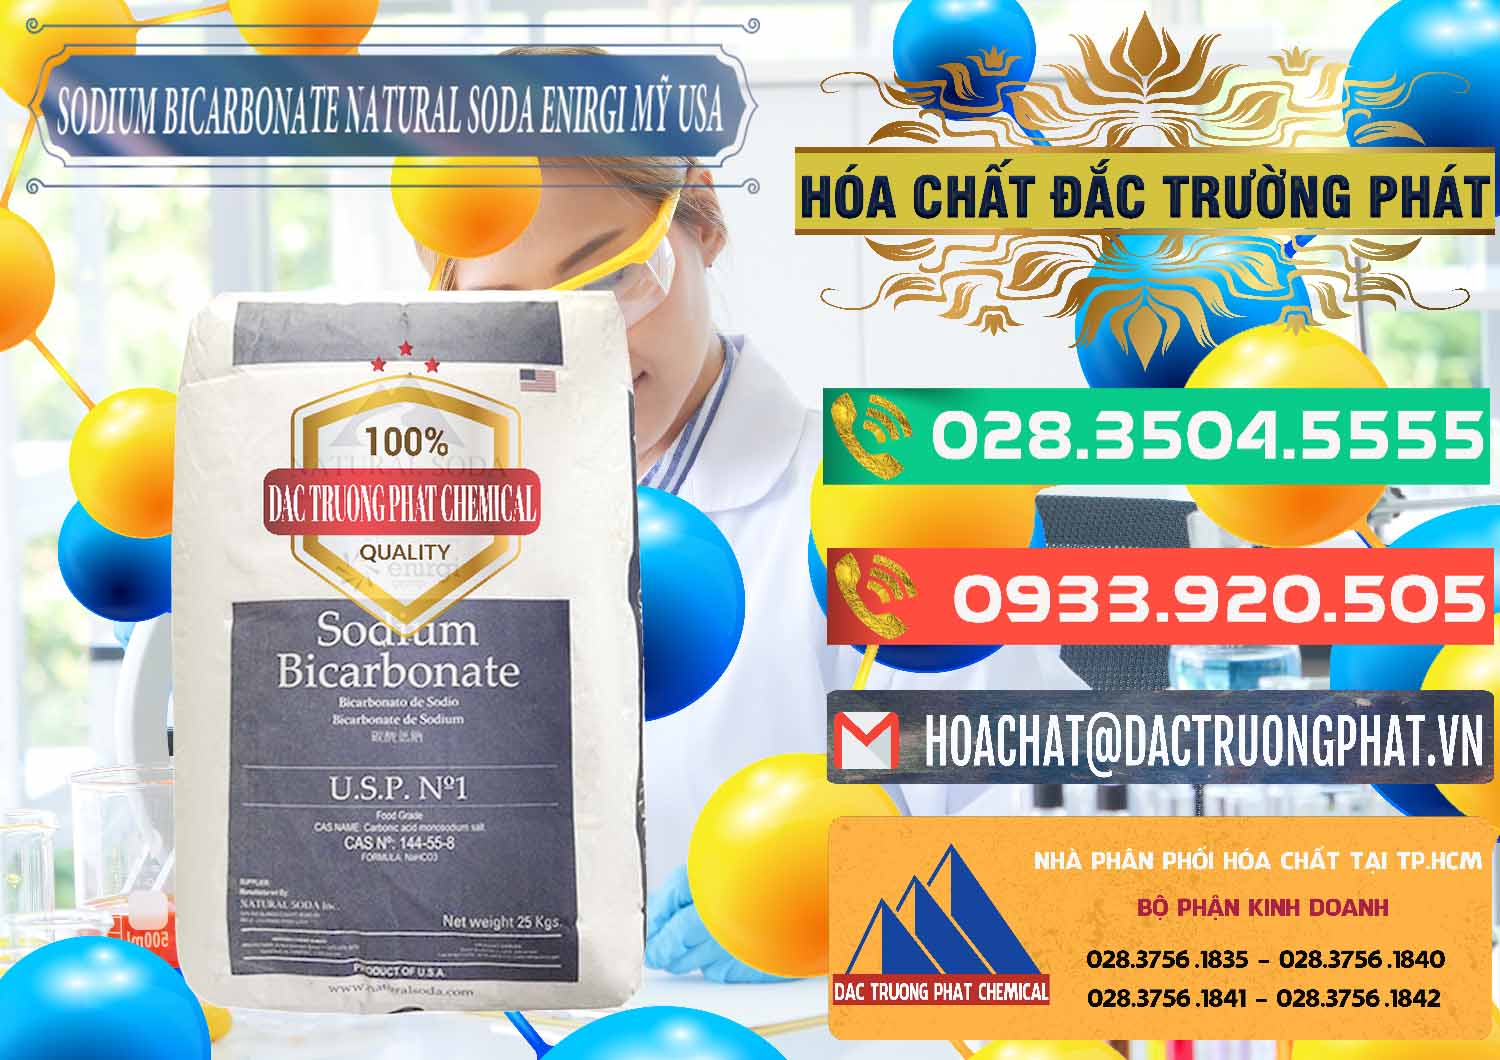 Phân phối _ bán Sodium Bicarbonate – Bicar NaHCO3 Food Grade Natural Soda Enirgi Mỹ USA - 0257 - Nhà nhập khẩu - cung cấp hóa chất tại TP.HCM - congtyhoachat.com.vn